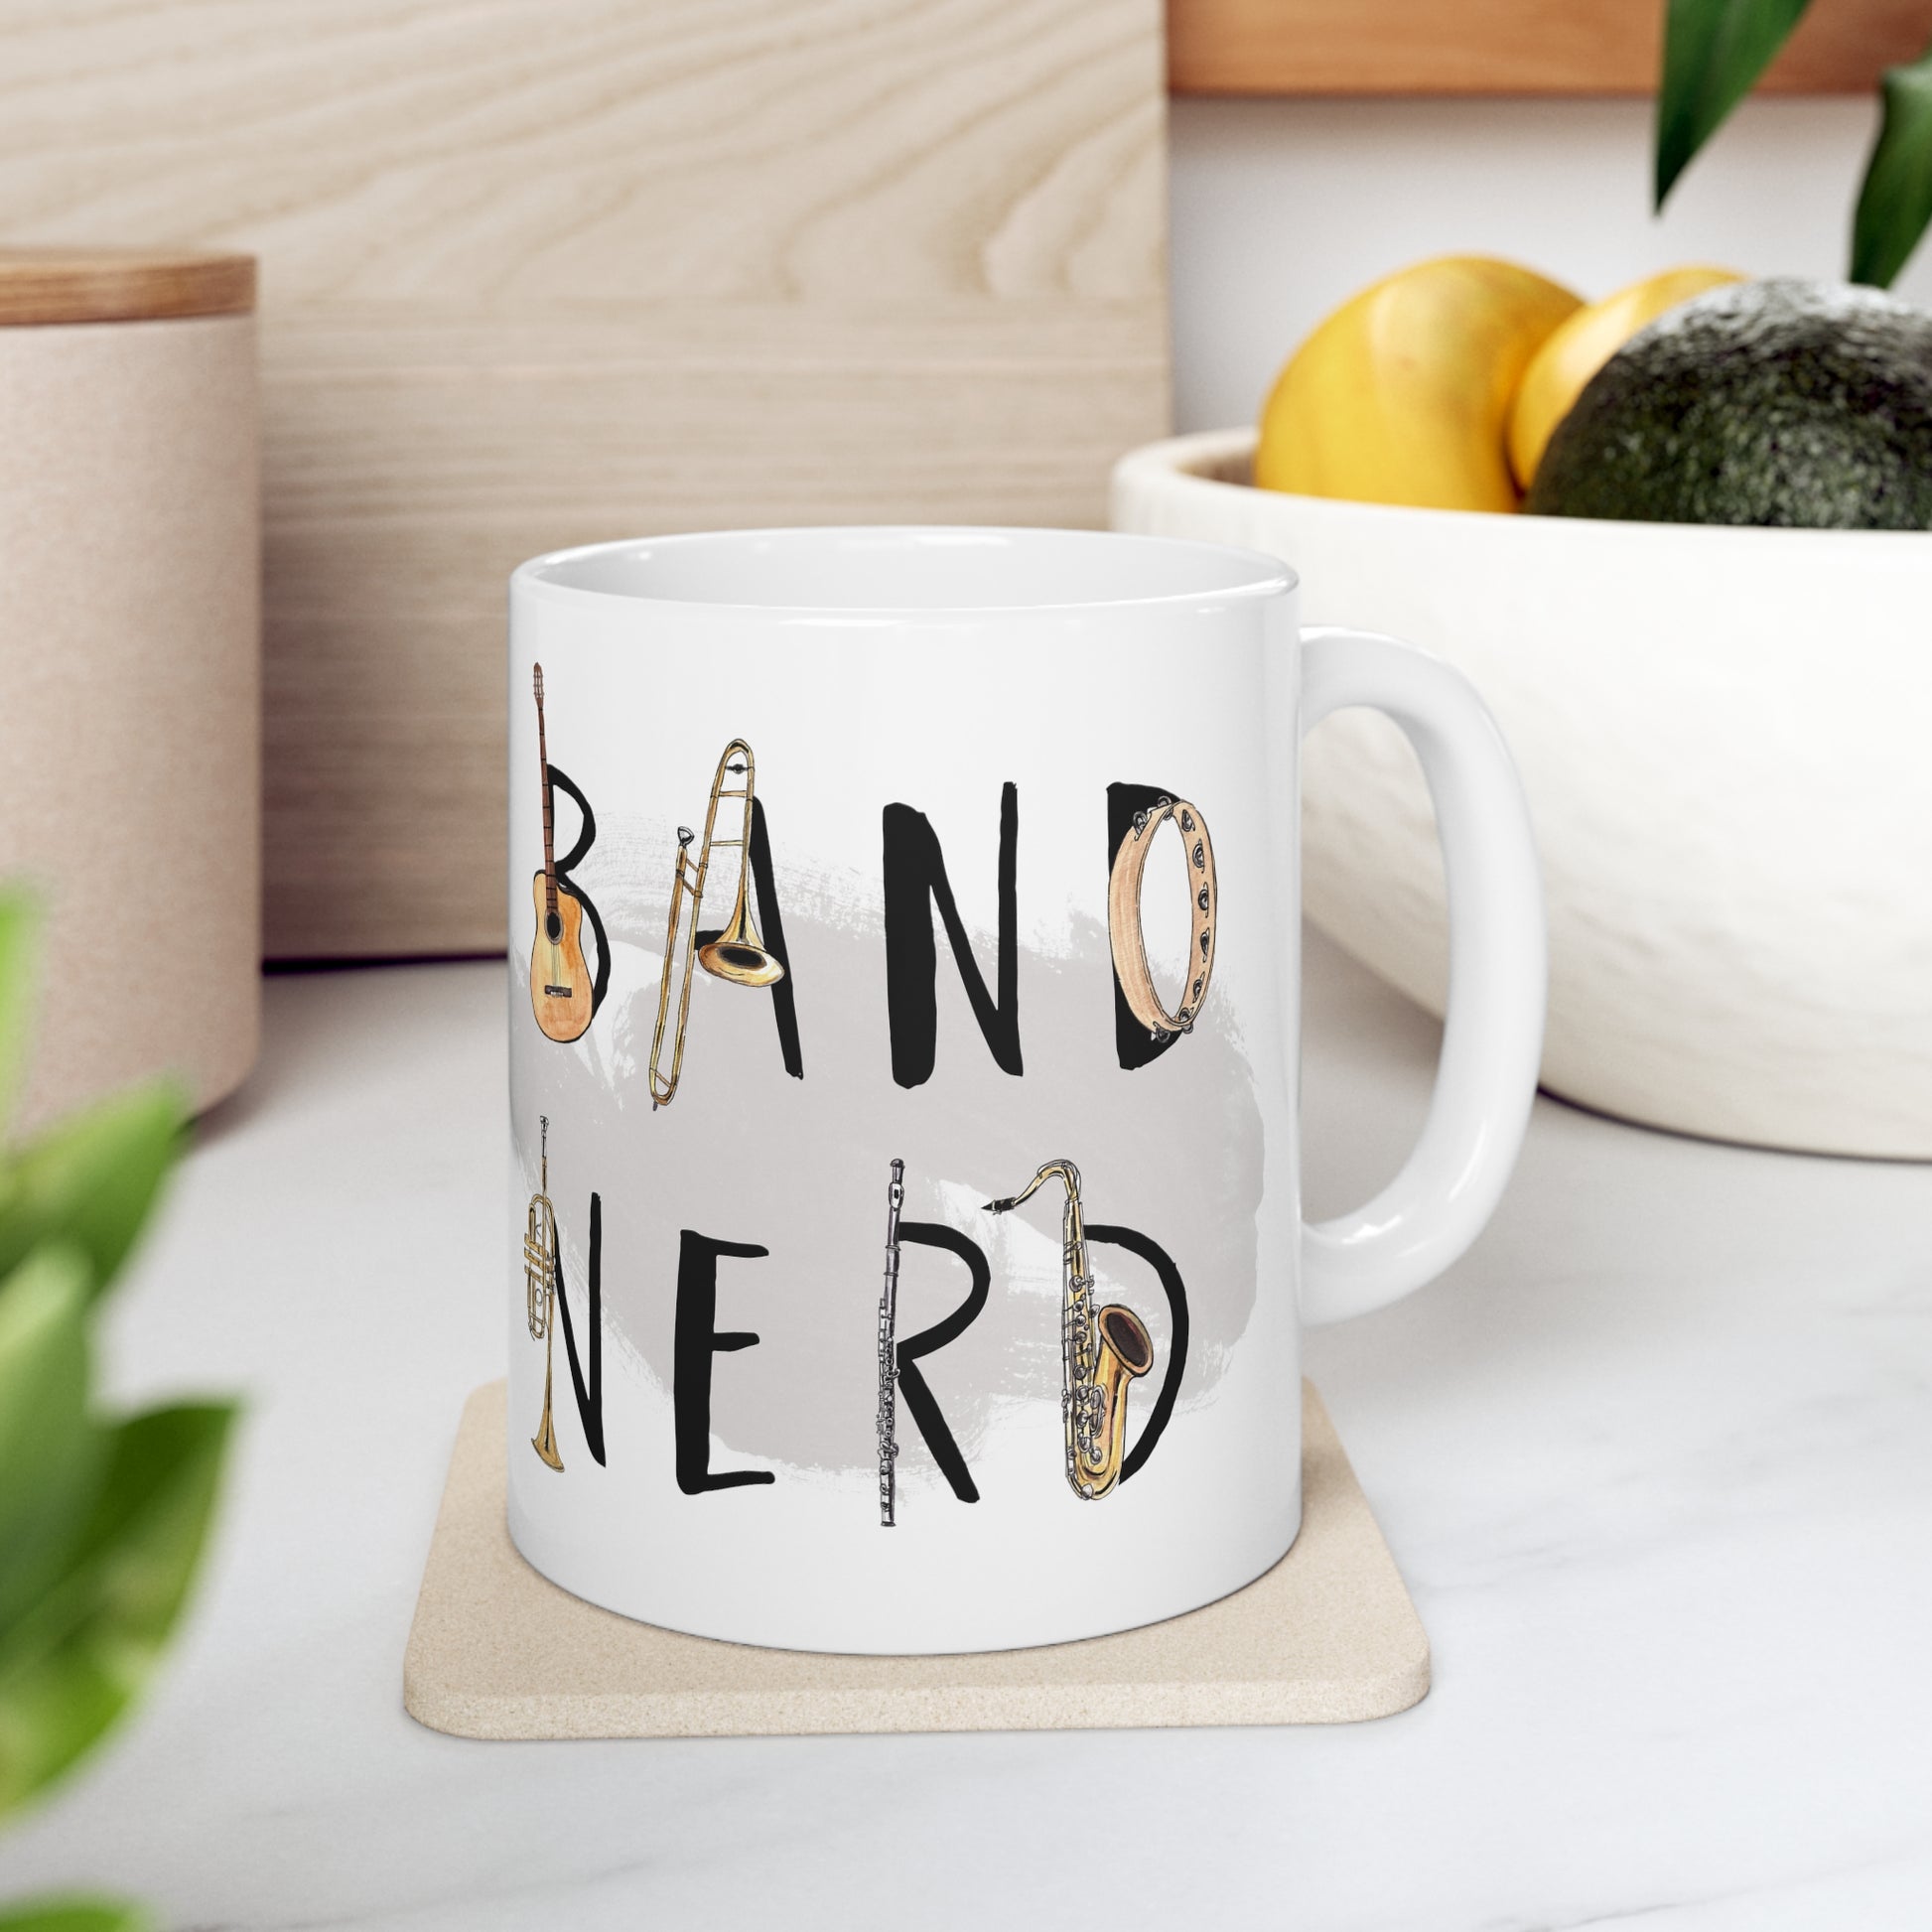 band nerd mug